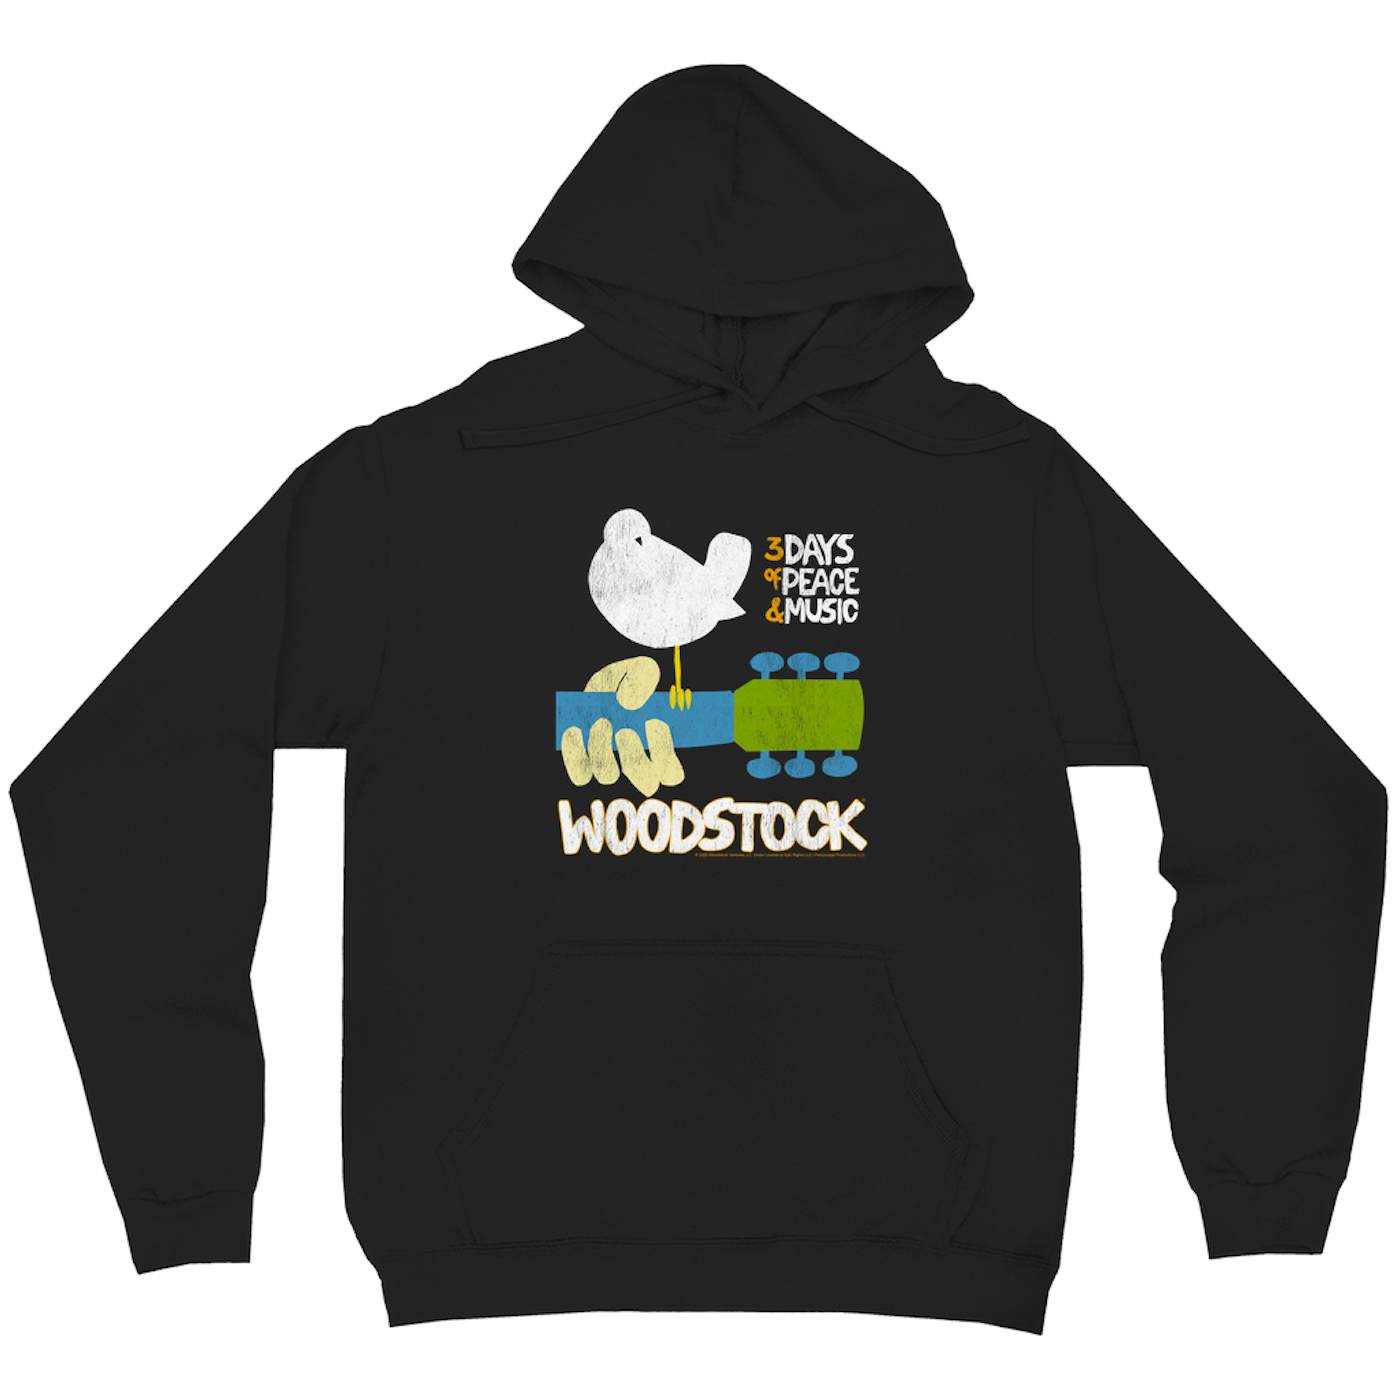 Woodstock Hoodie | 3 Days Of Peace And Music Woodstock Hoodie